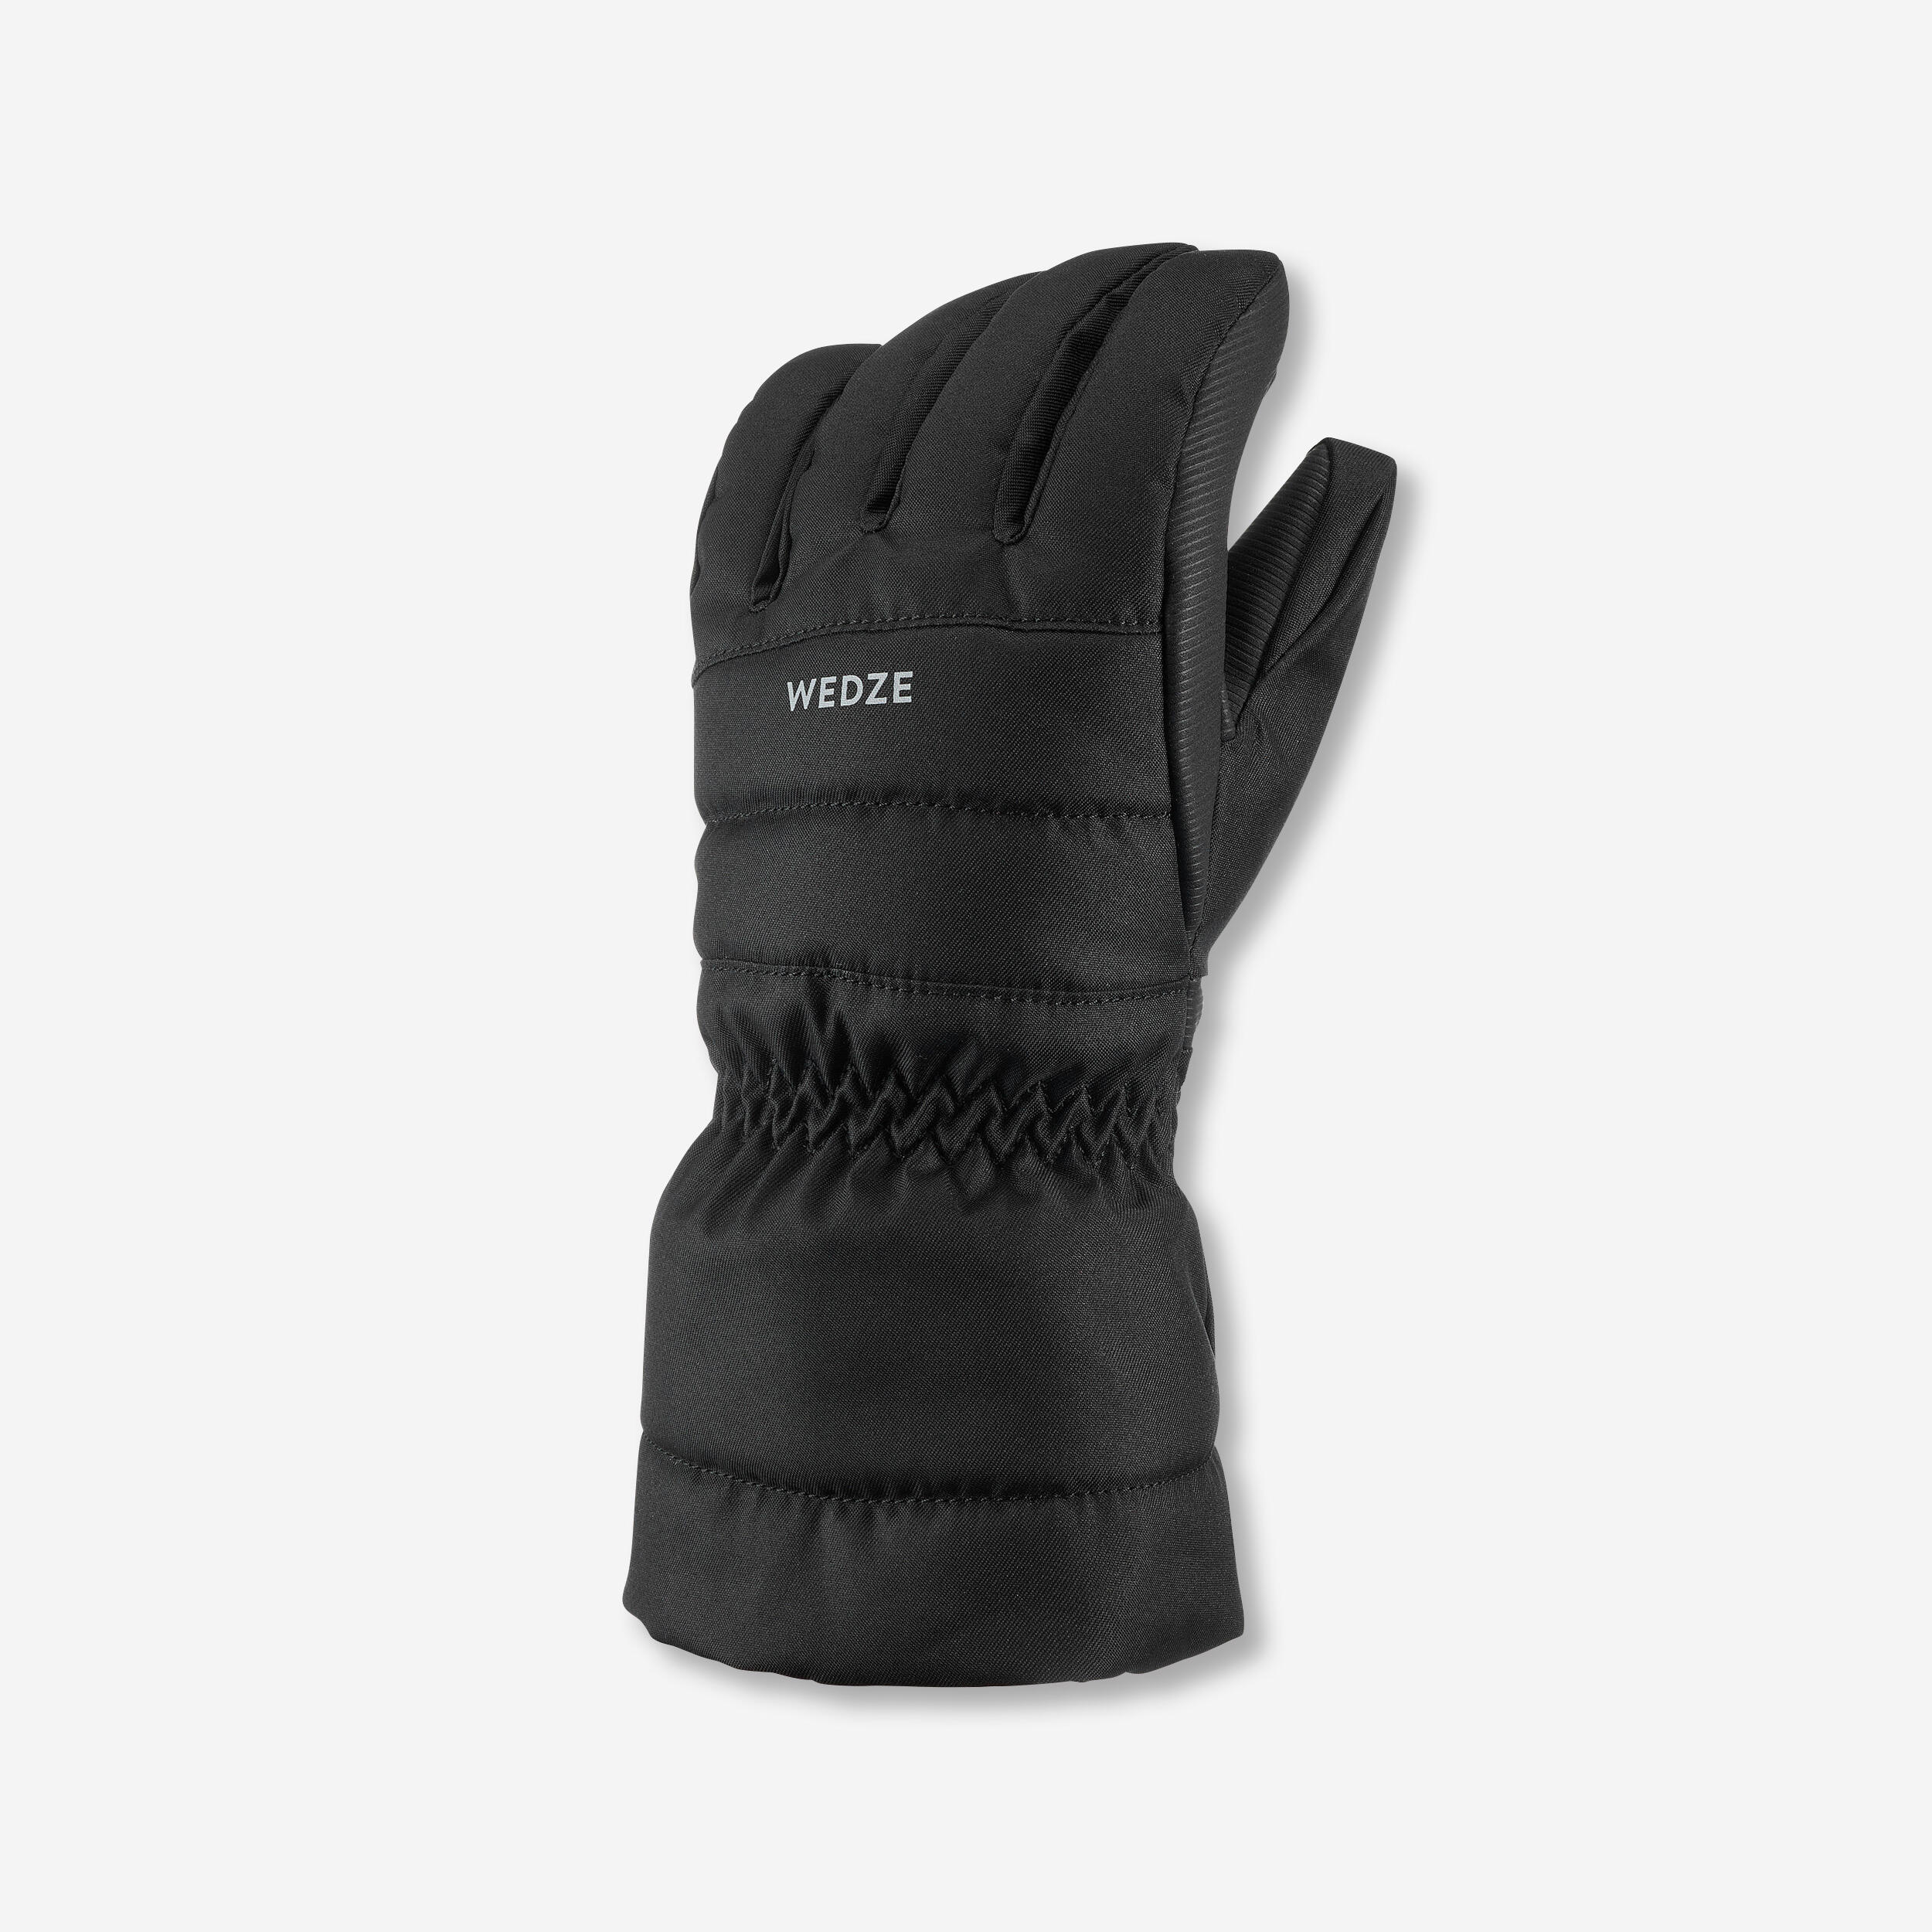 WEDZE Kids' Ski Gloves - Black